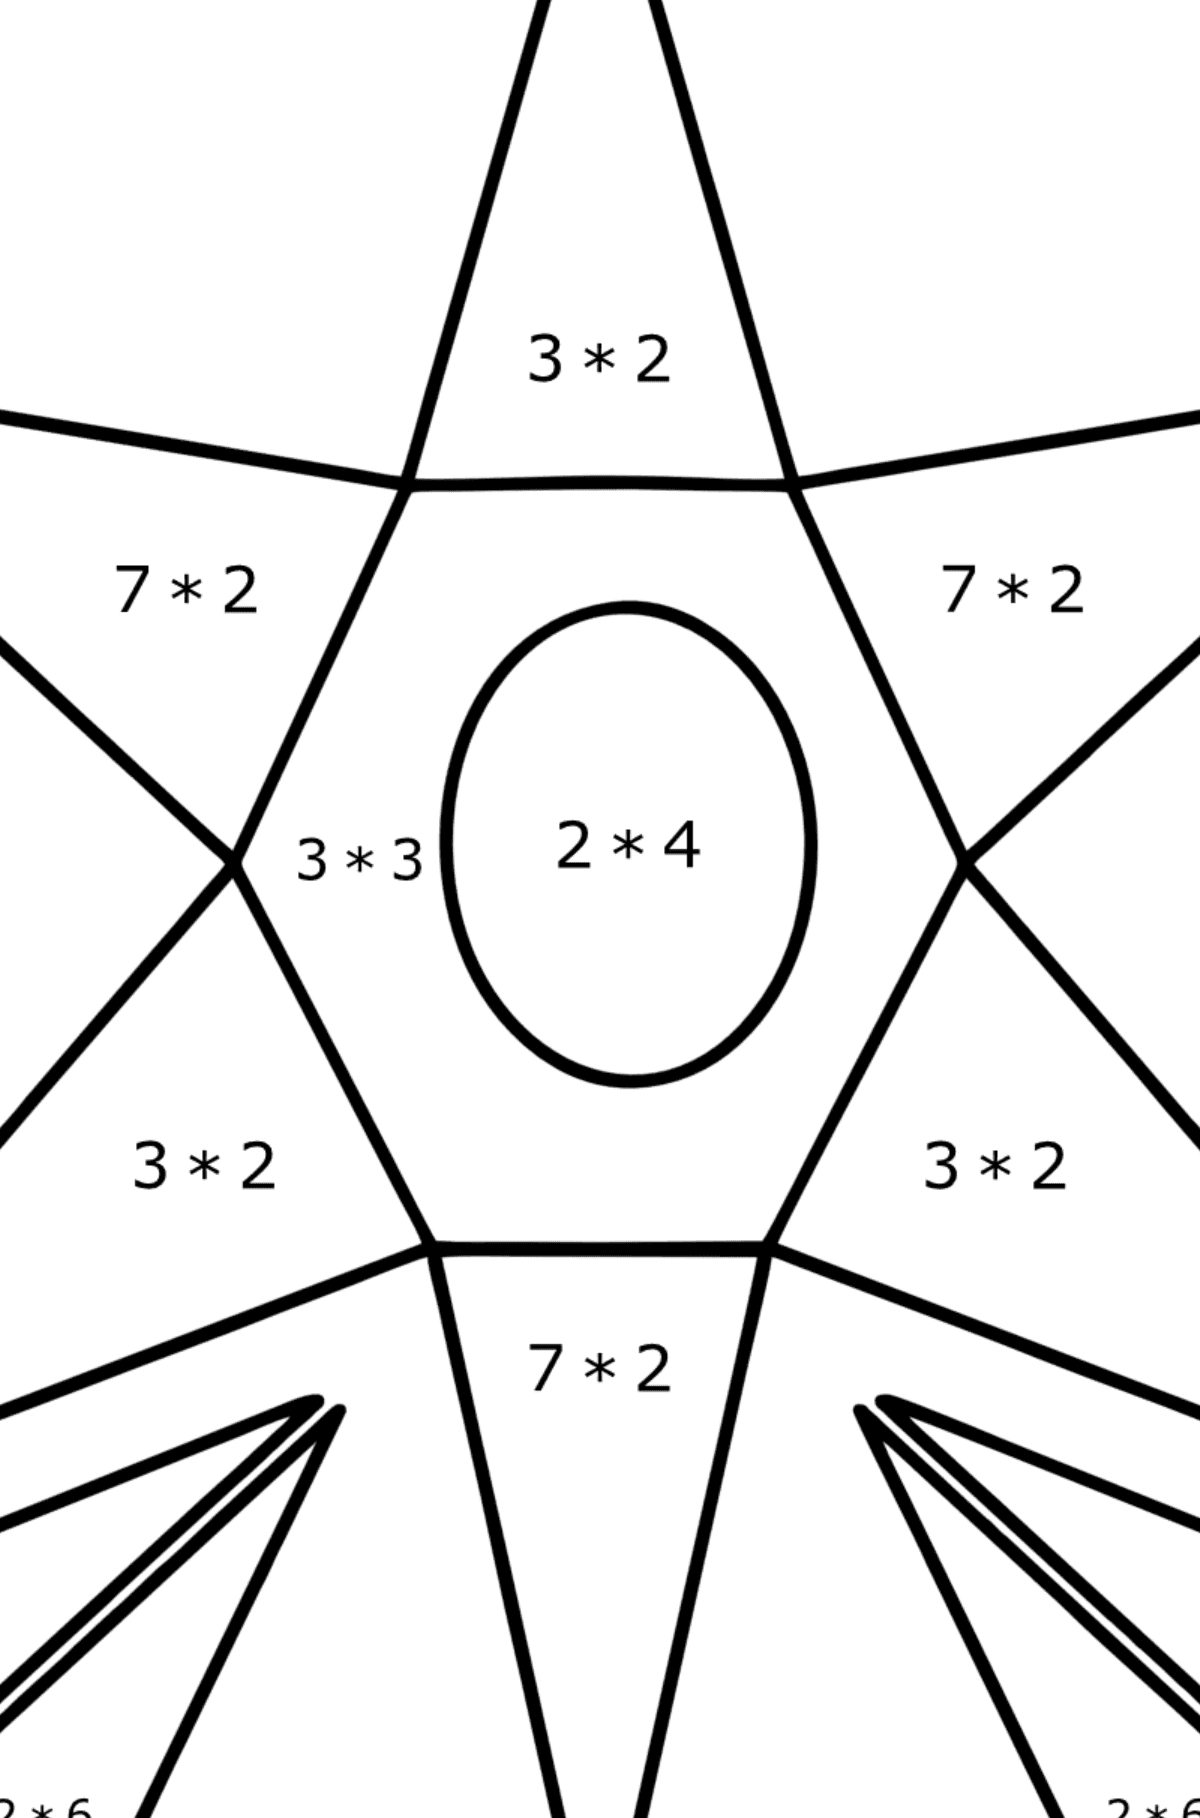 Omalovánka geometrické tvary - květina - Matematická Omalovánka - Násobení pro děti